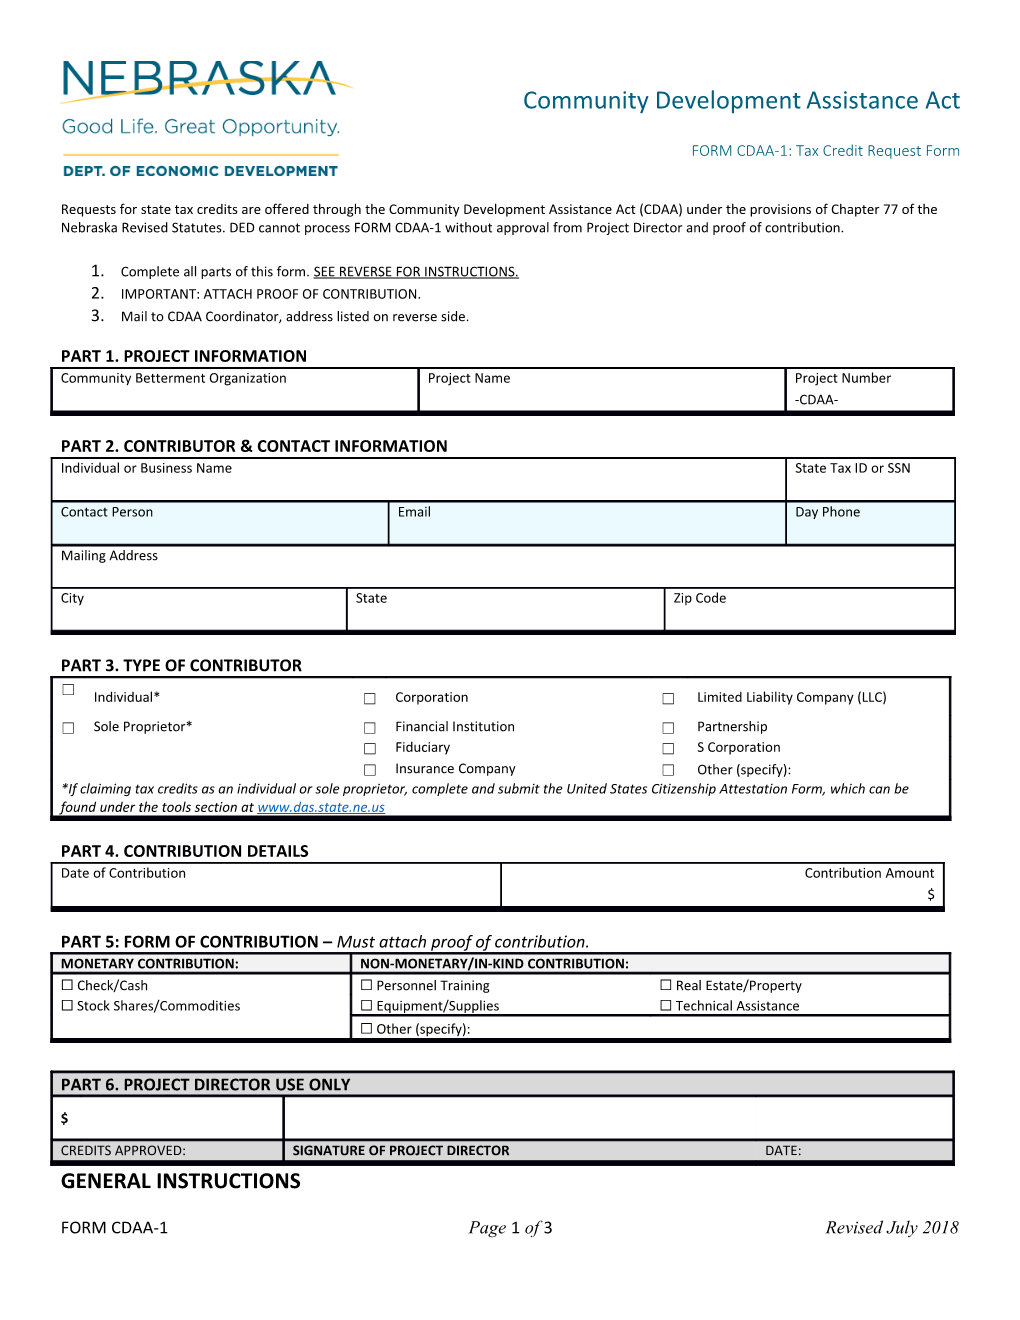 FORM CDAA-1: Tax Credit Request Form